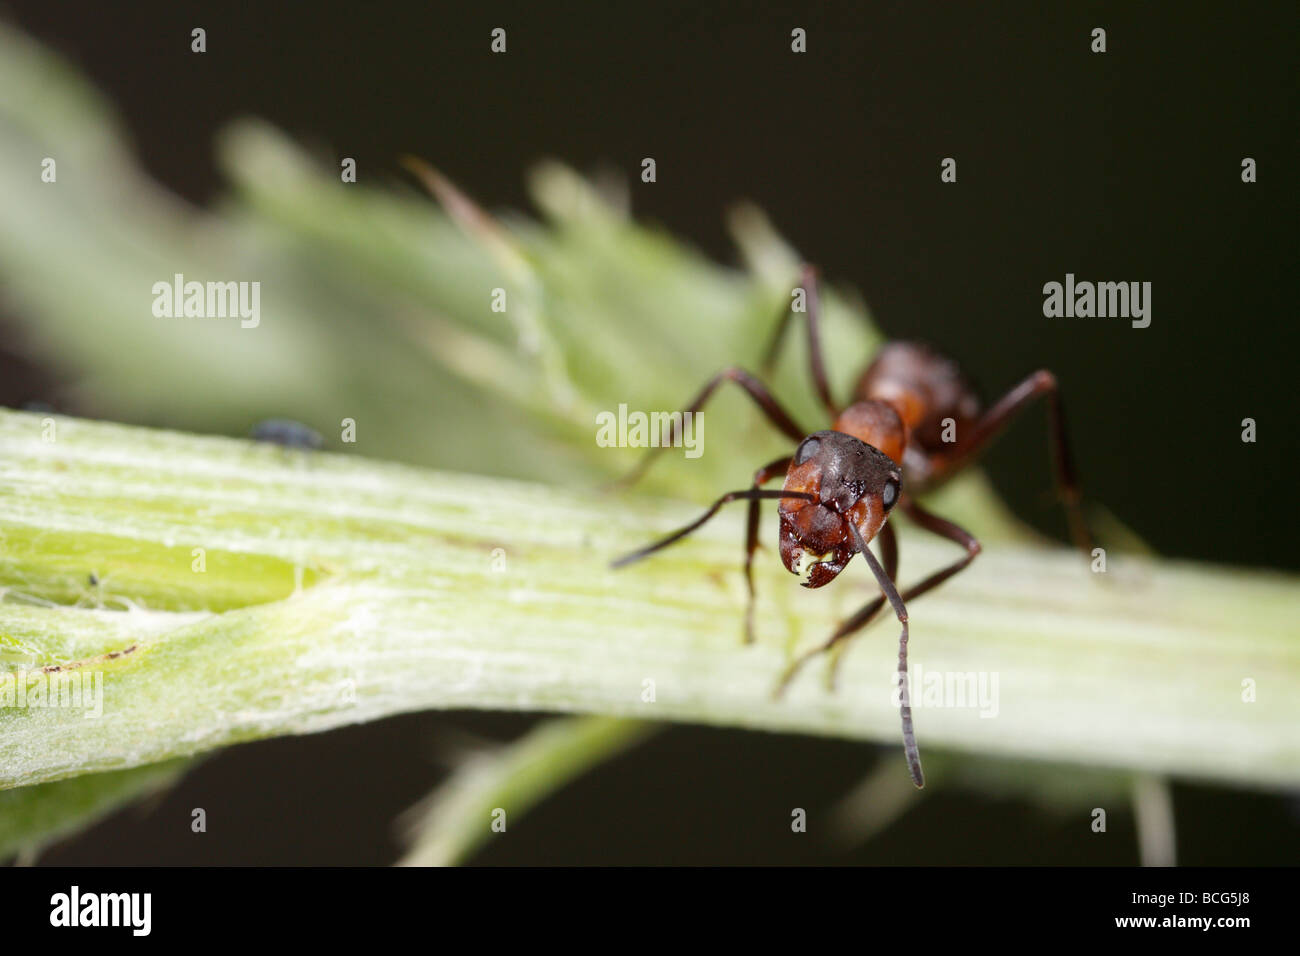 Pferd-Ameise (Formica Rufa) auf eine Pflanze Stiel. Der Arbeitnehmer ist in die Kamera blickte. Stockfoto